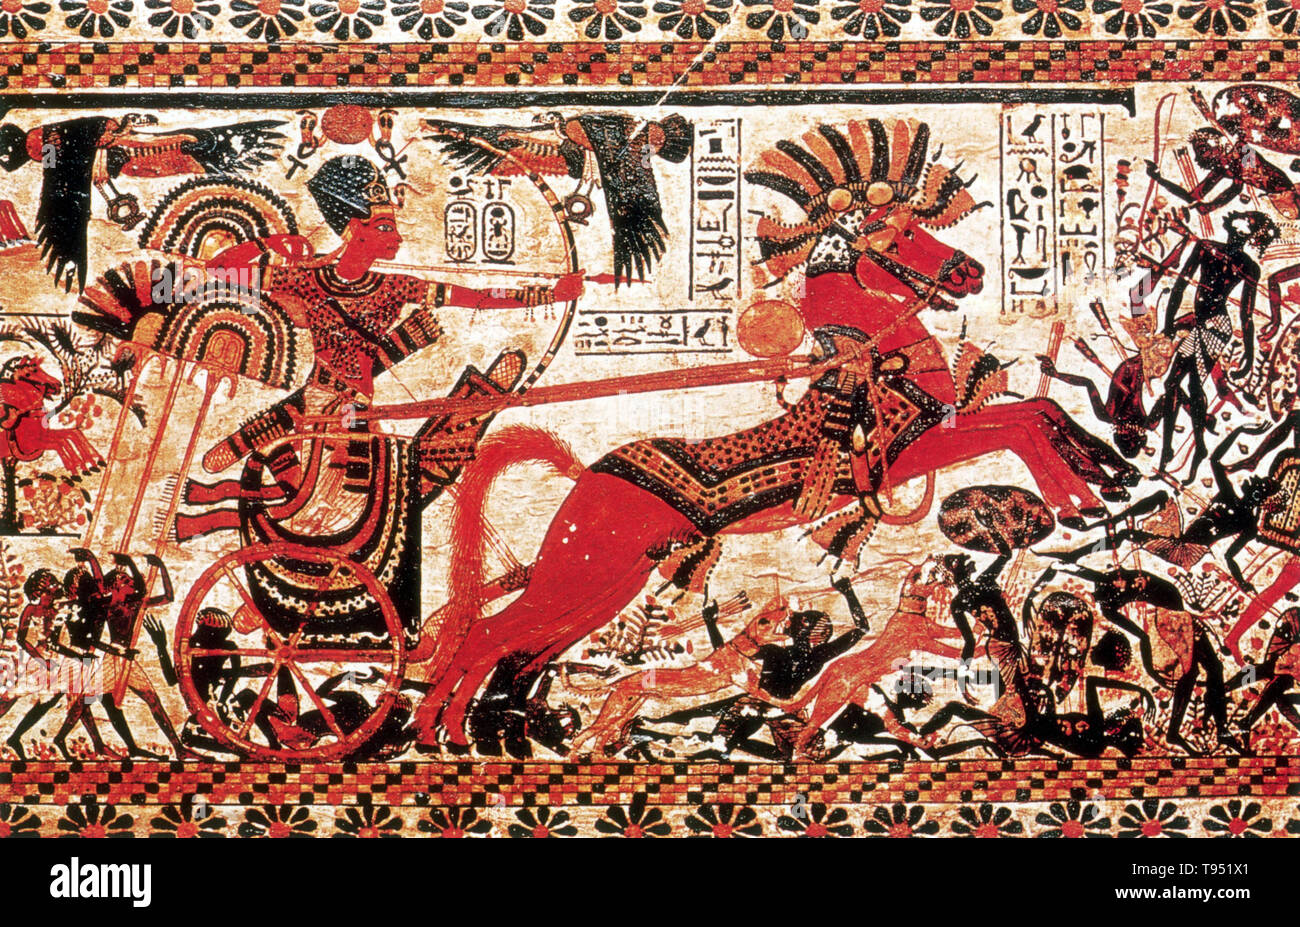 Dettaglio dal petto decorato con pannelli raffiguranti Tutankhamon nel suo carro attaccando Nubians. Tutankhamon è stato un faraone Egizio della XVIII dinastia (governata 1332 a 1323 BC), durante il periodo noto come il Nuovo Regno. Egli era il figlio di Akhenaton e uno di Akhenaten sorelle. Egli salì al trono nel 1333 BC, all'età di nove o dieci, prendendo il nome di trono Nebkheperure. Quando divenne re, ha sposato il suo half-sister, Ankhesenpaaten, che più successivamente ha cambiato il suo nome in Ankhesenamun. Foto Stock